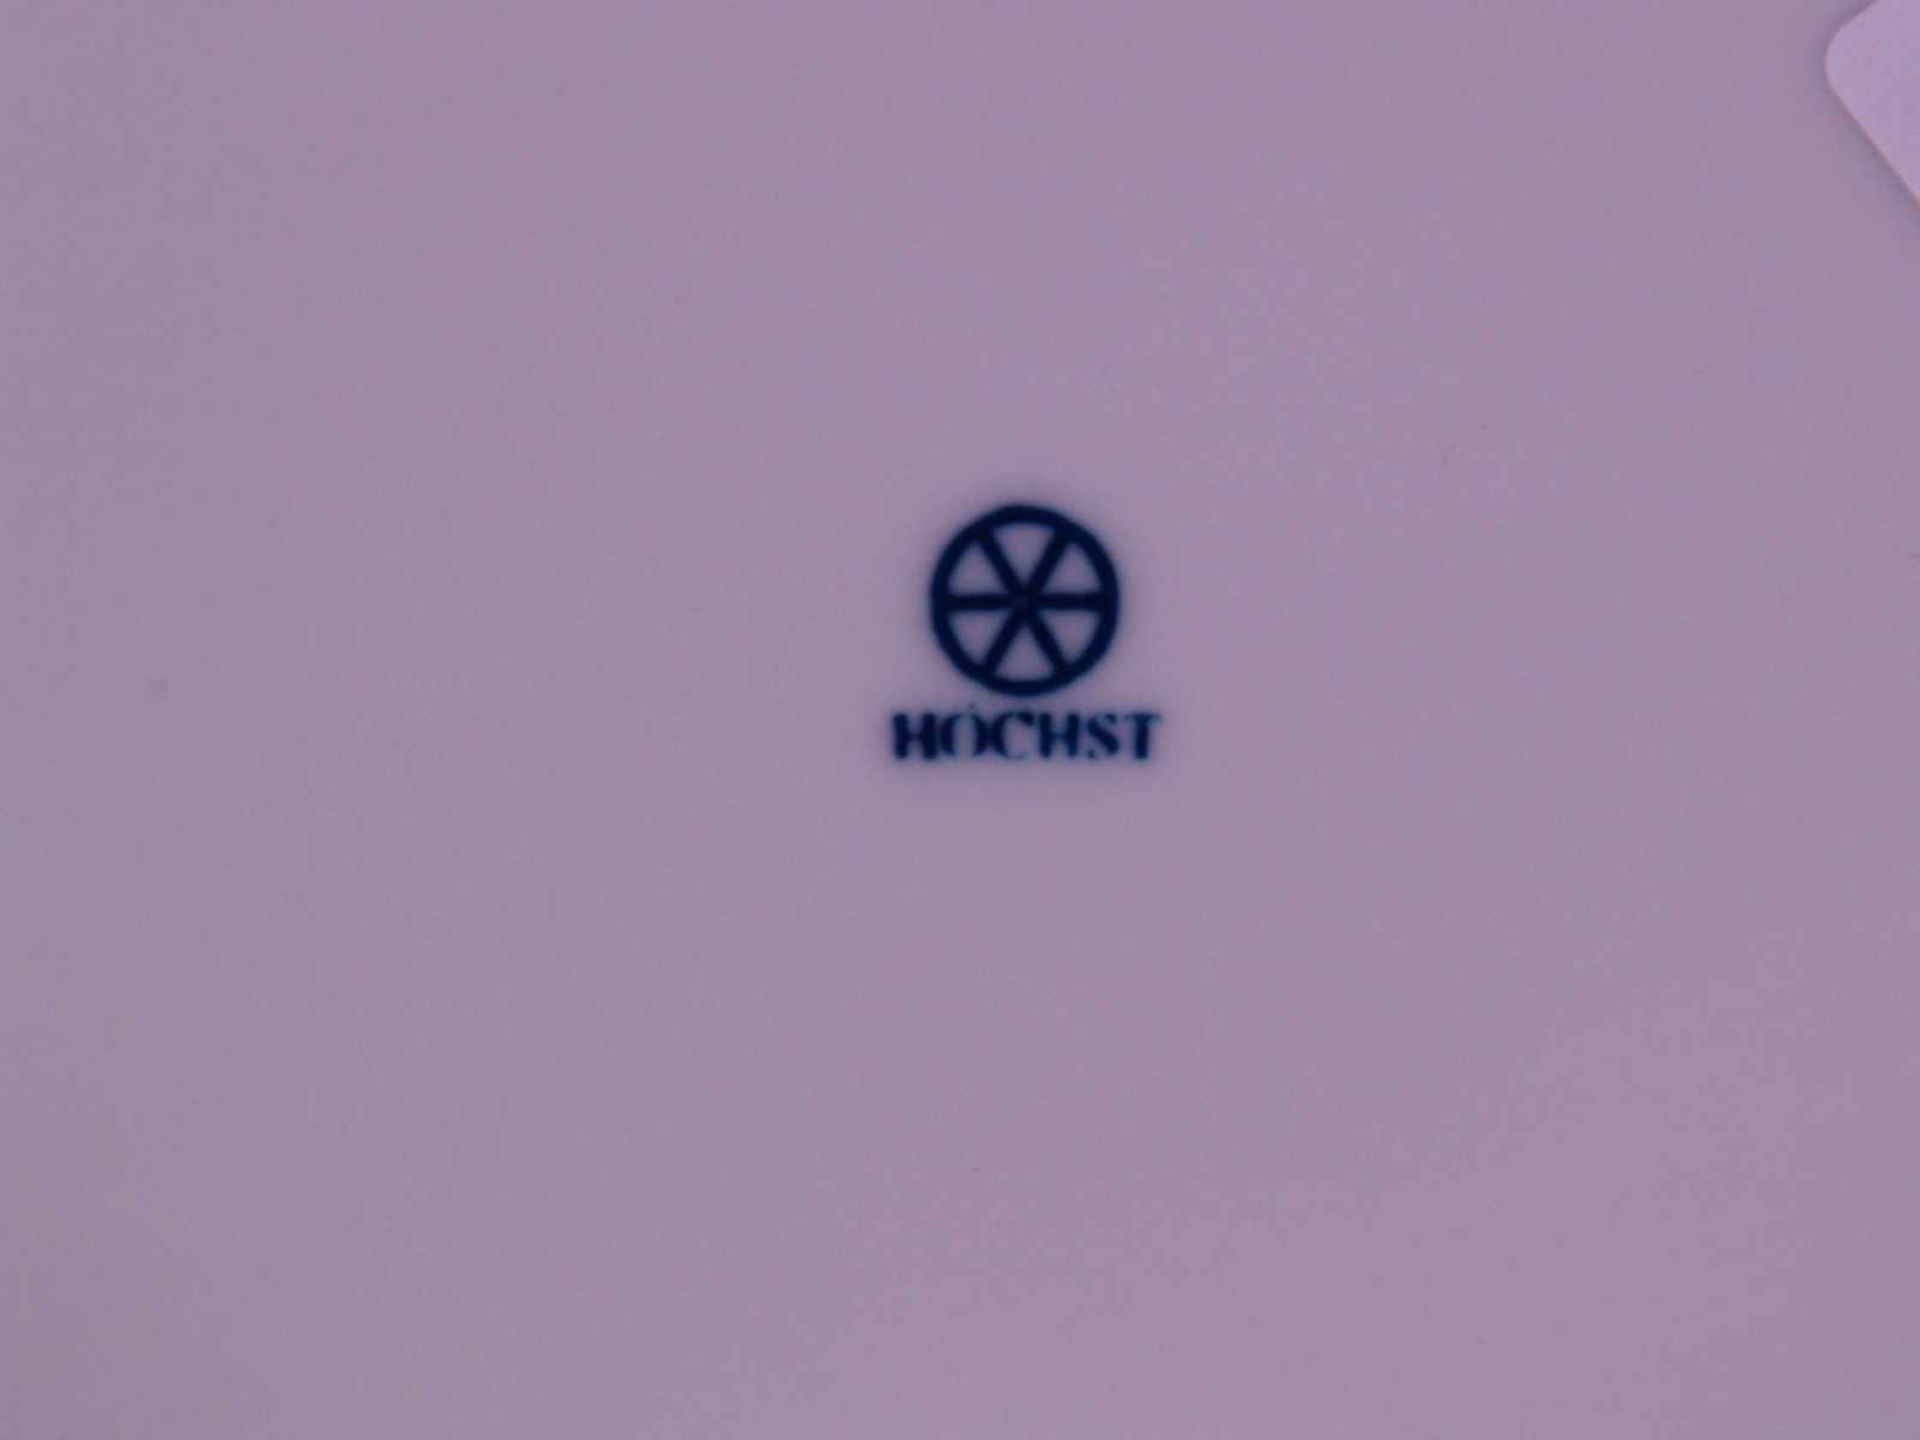 Deckeldose mit Sarotti-Mohr - Hoechst, blaue Radmarke, 20.Jh., Deckel braun staffiert mit - Bild 4 aus 4